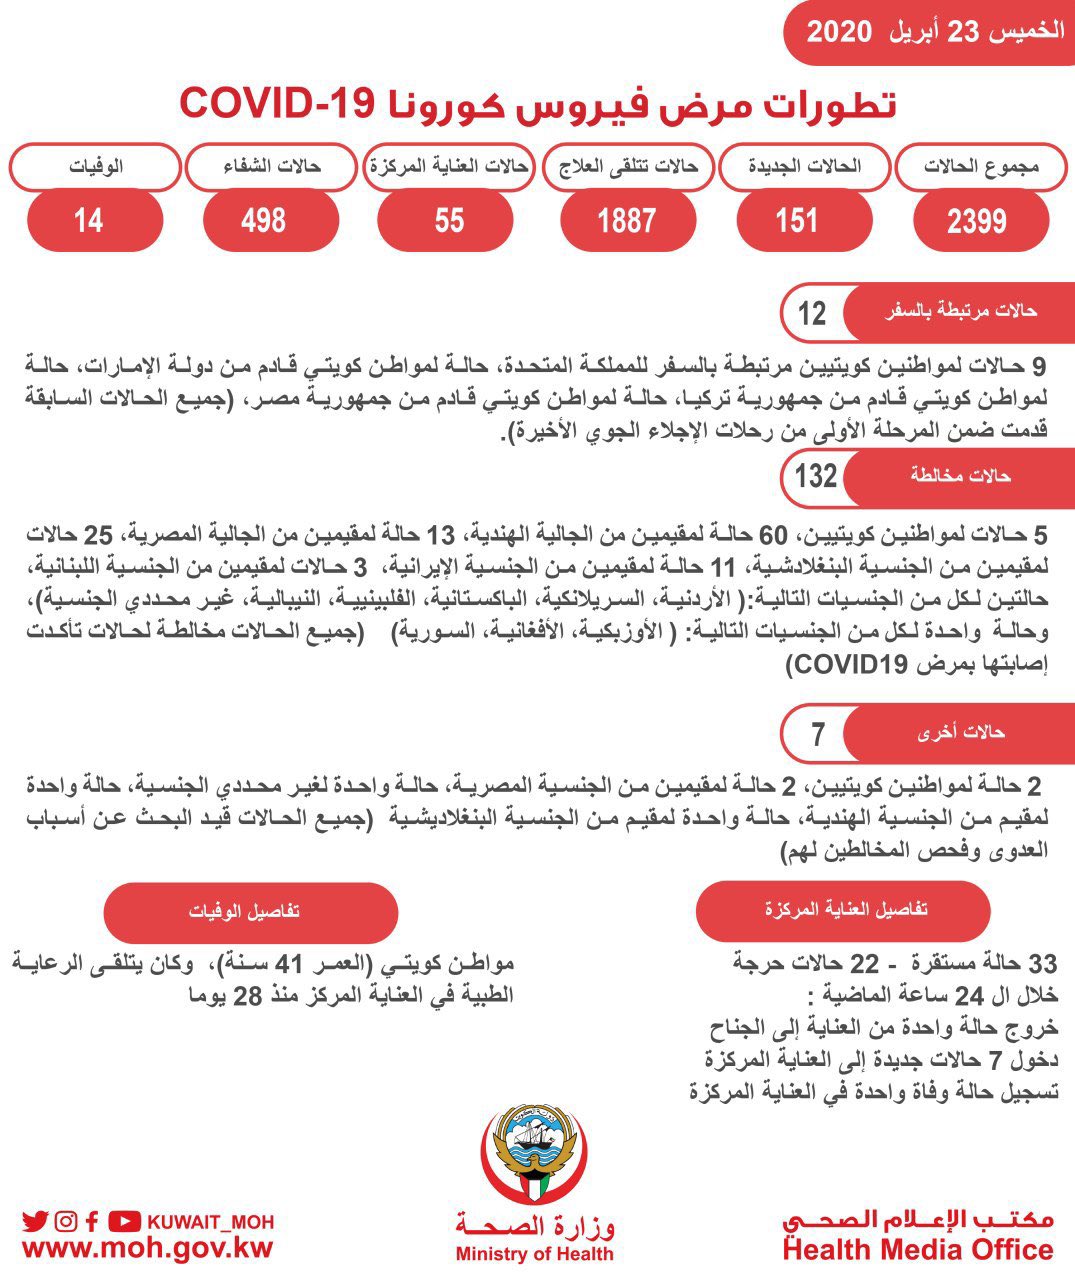 حالات فيروس كورونا في الكويت اليوم 23-4-2020